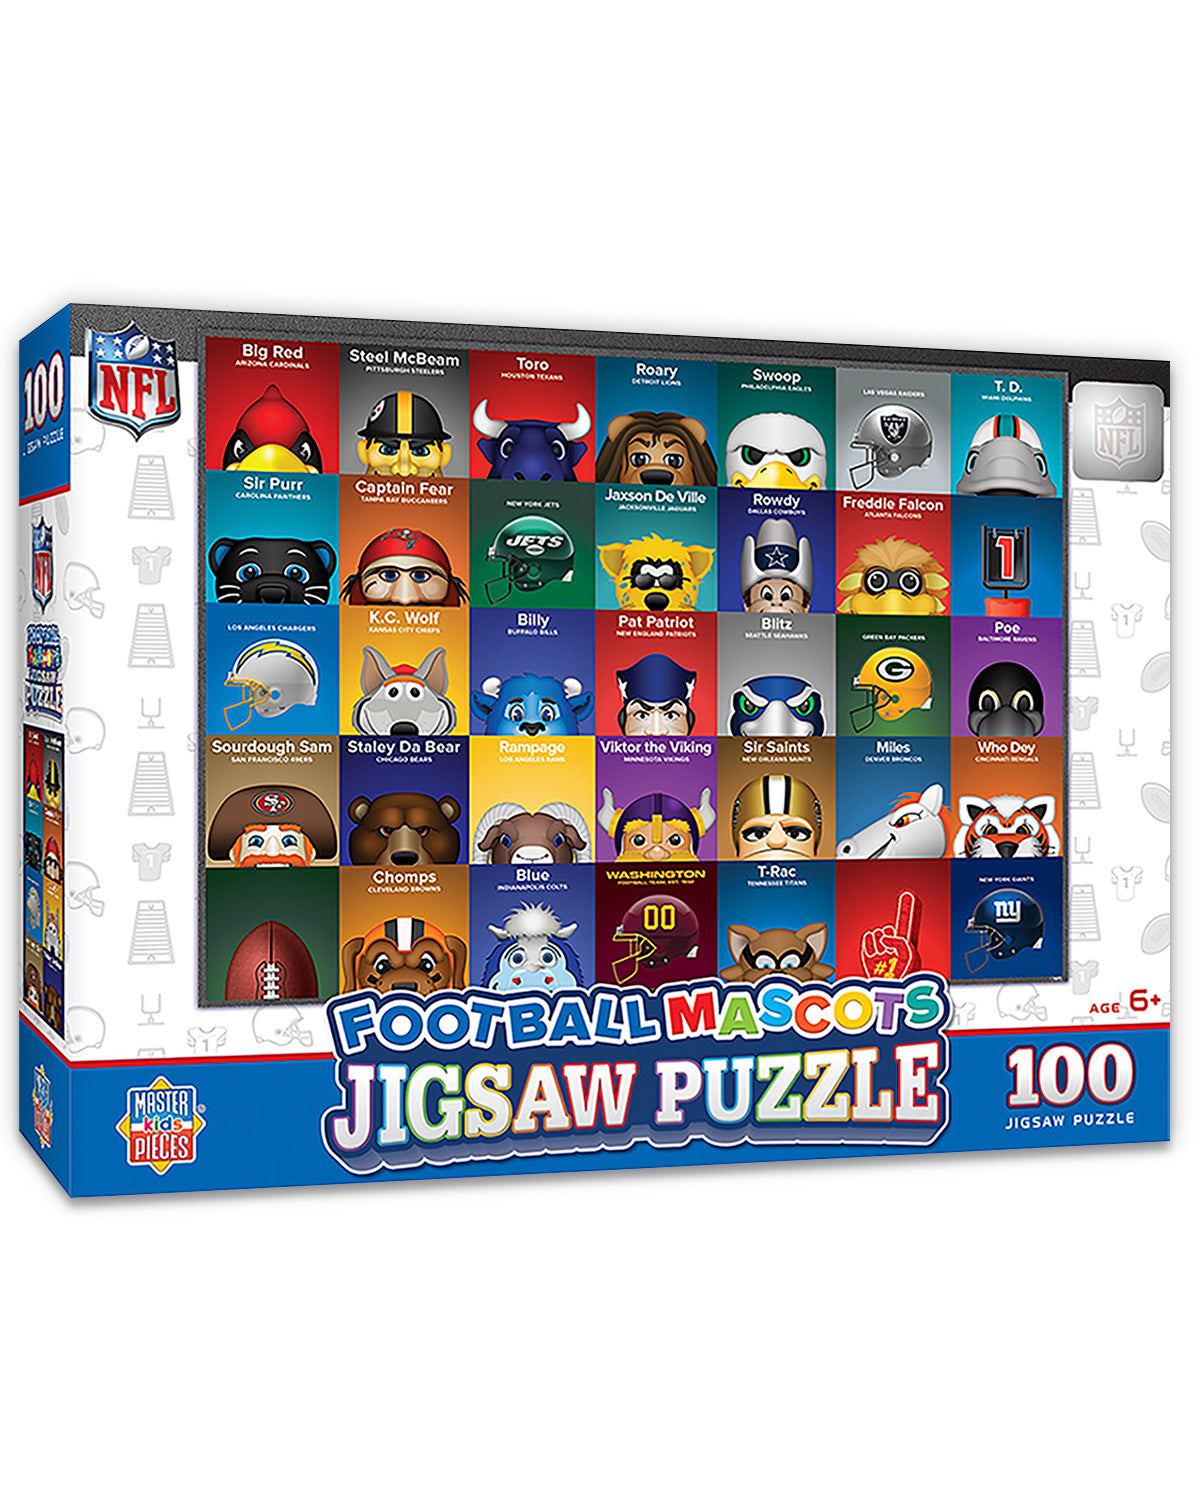 Minimalist NFL Mascot Jigsaw Puzzle